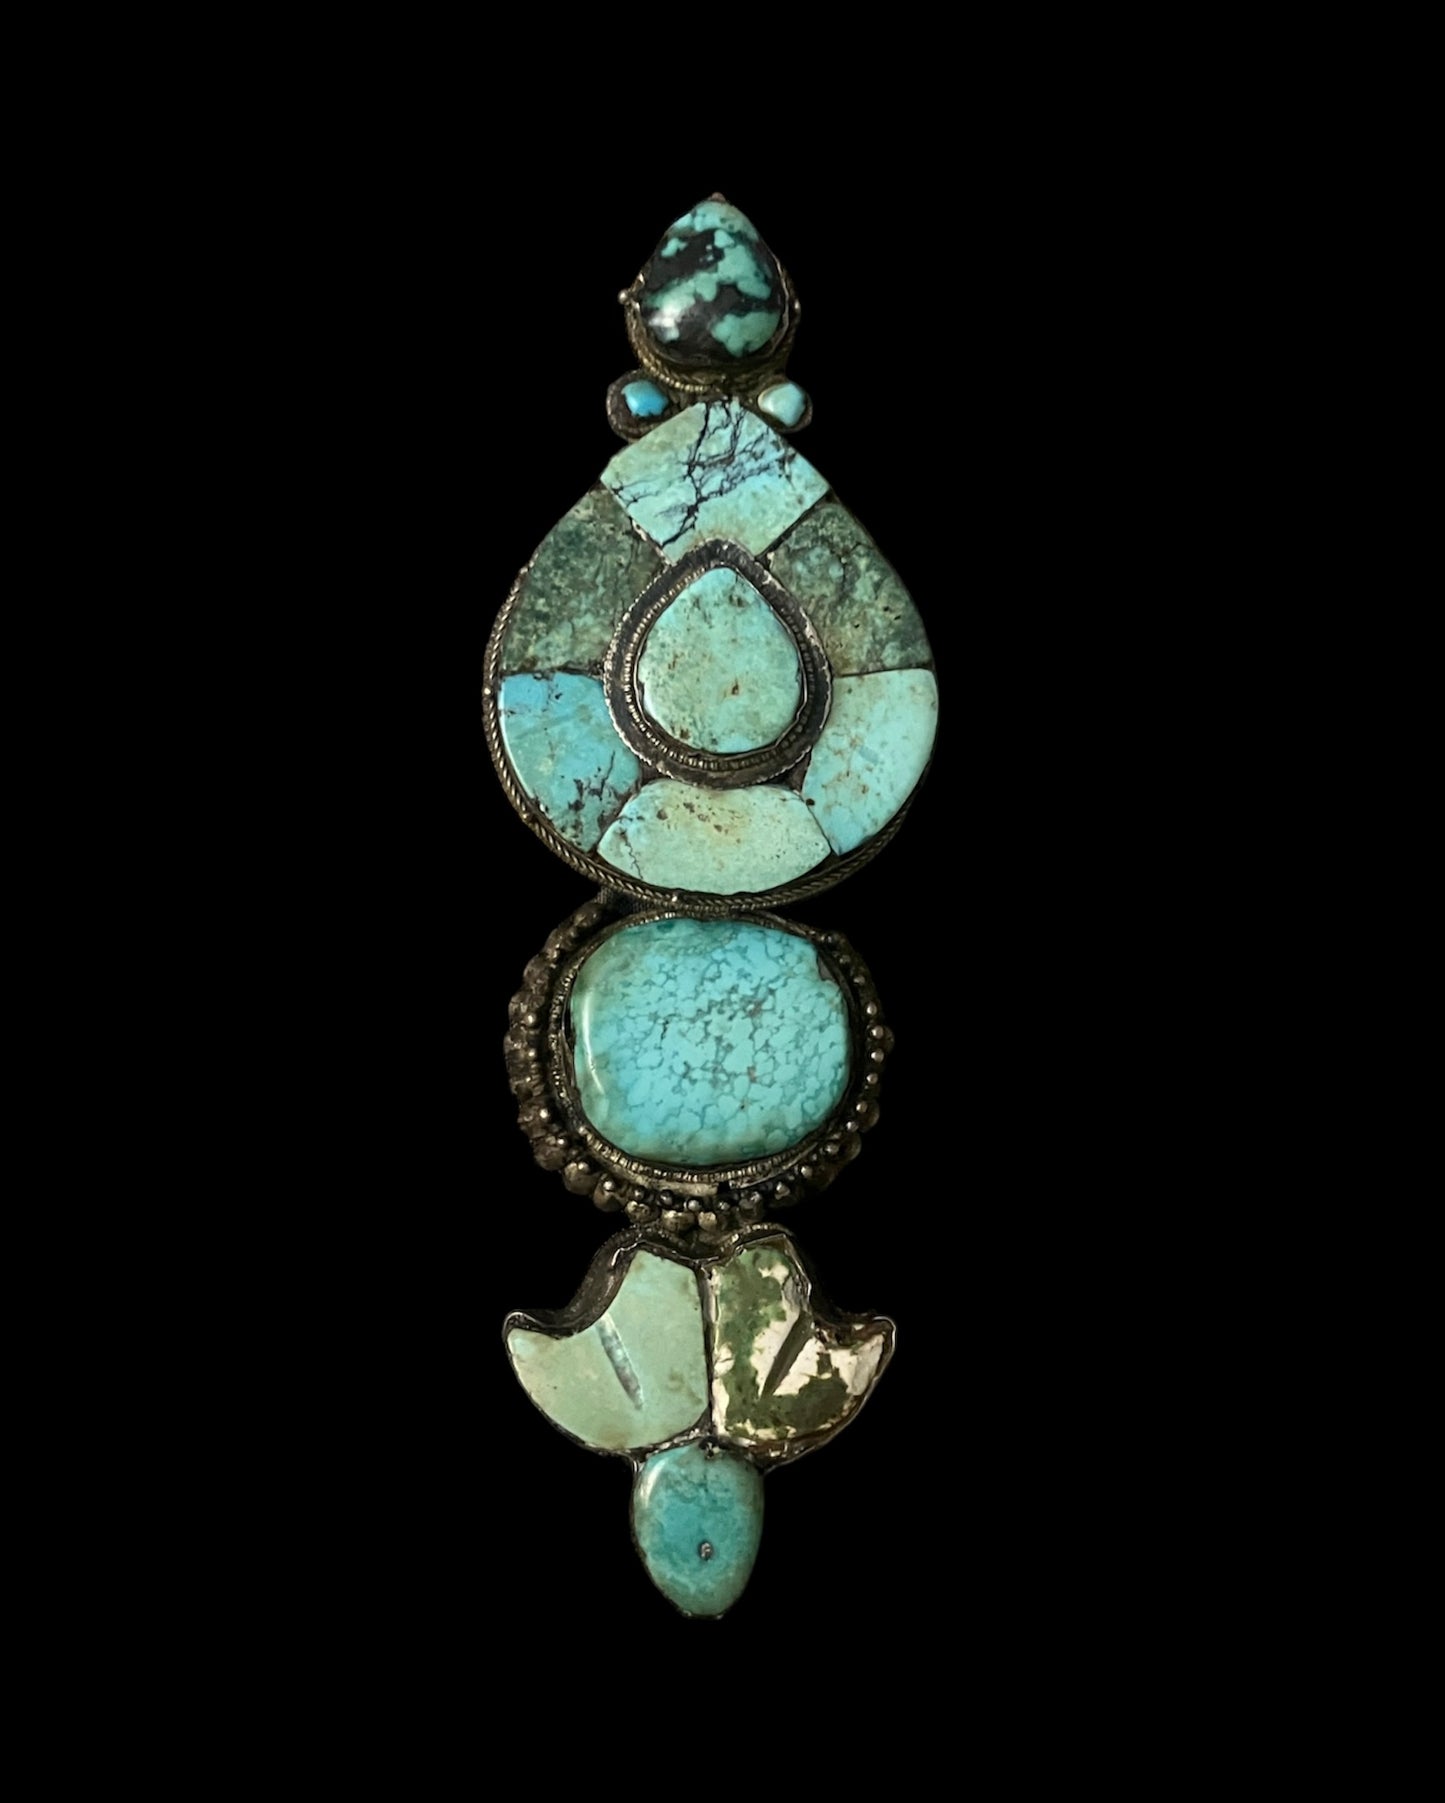 A single antique ear pendant - Tibetan aykhor